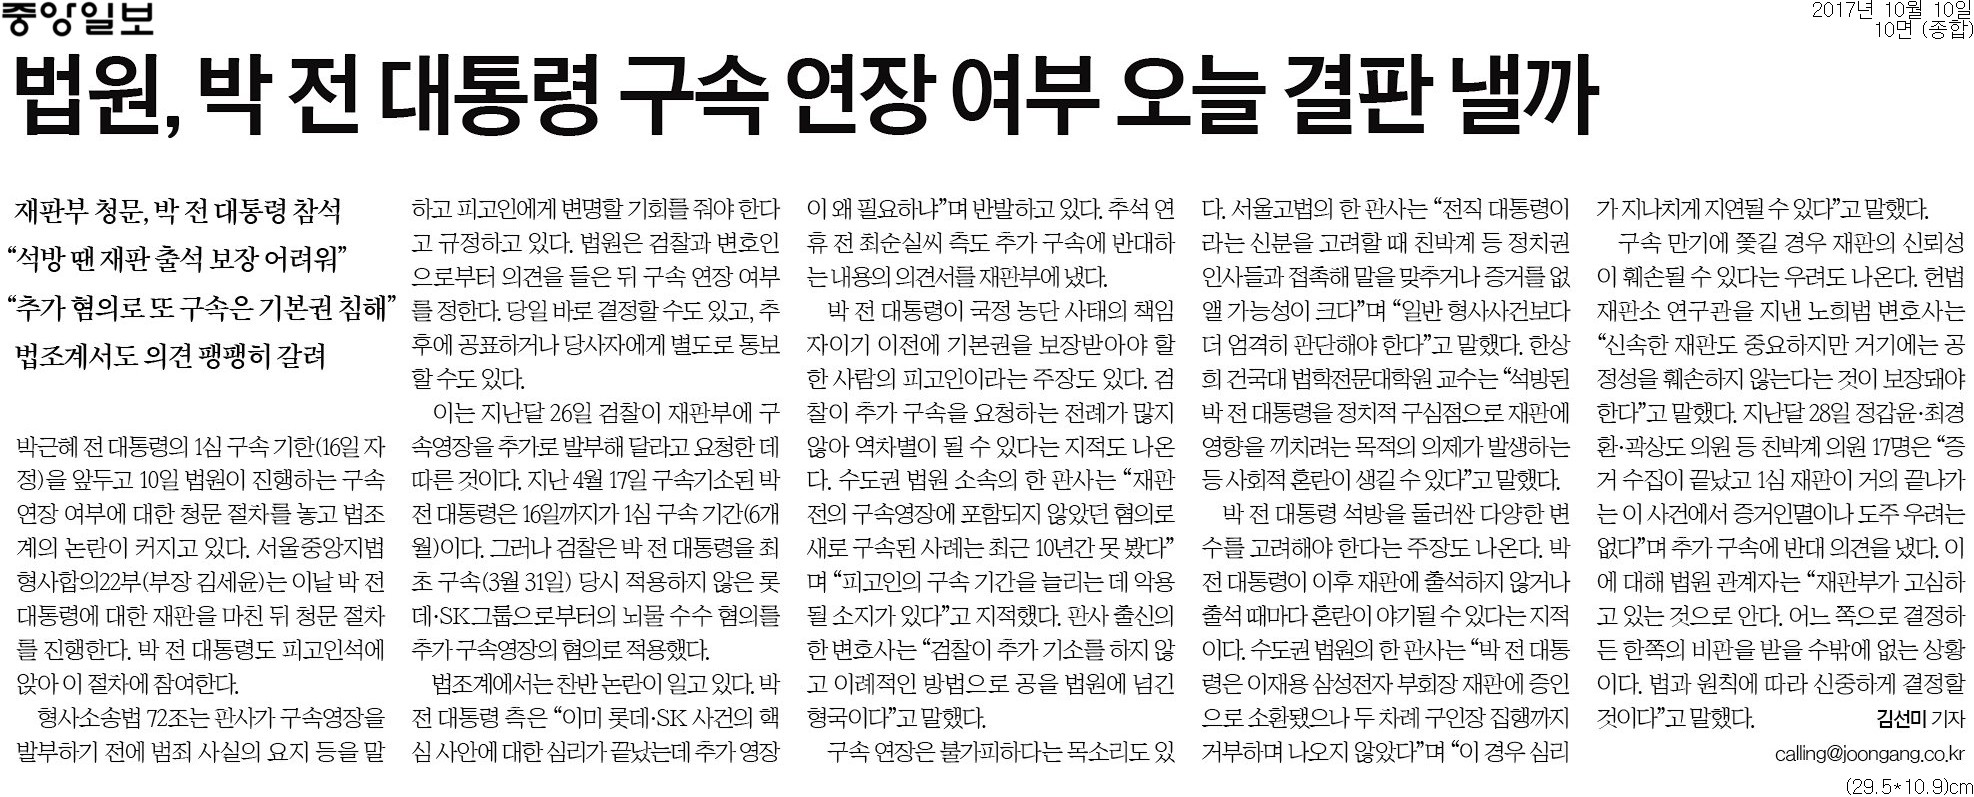 ▲ 중앙일보 10면 기사